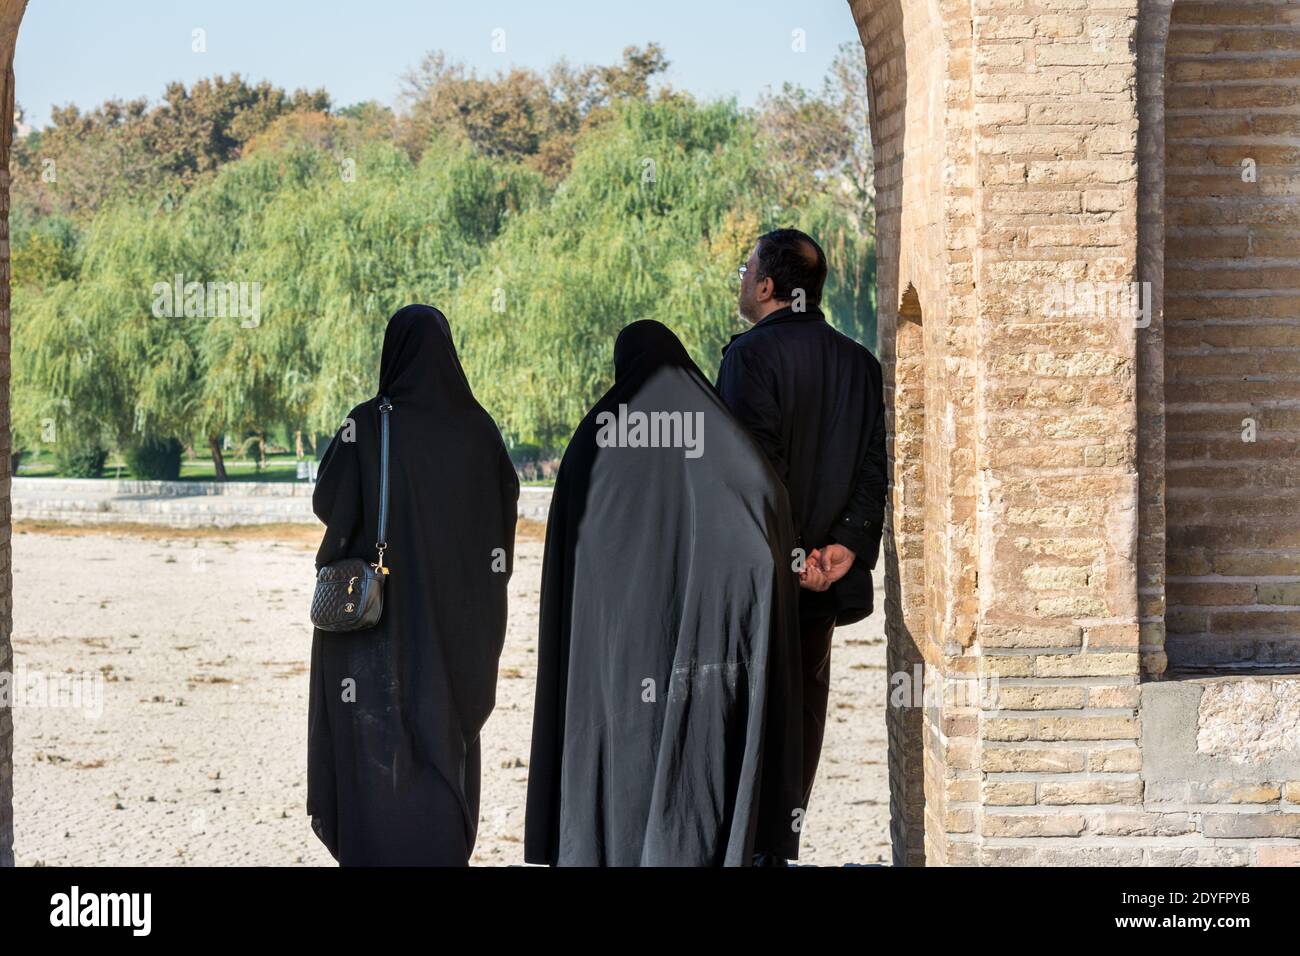 Iran visiteurs se tenant à l'Arche d'Allahverdi Khan Bridge, également connu sous le nom de si-o-seh Pol ou pont de trente-trois travées, Esfahan, Iran. Banque D'Images